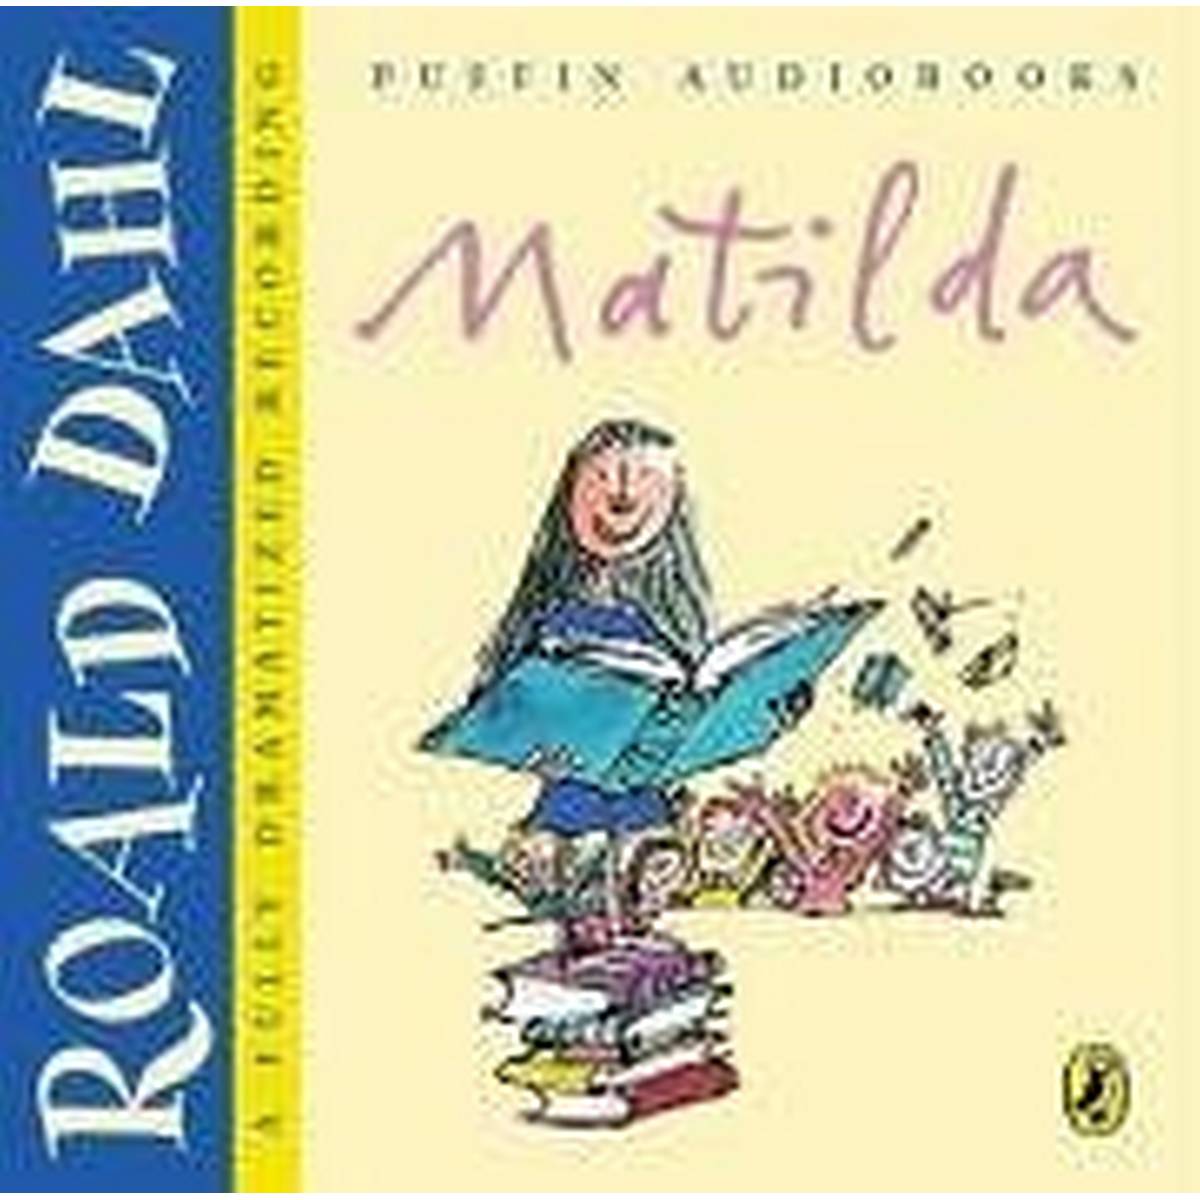 Matilda Audio Cd